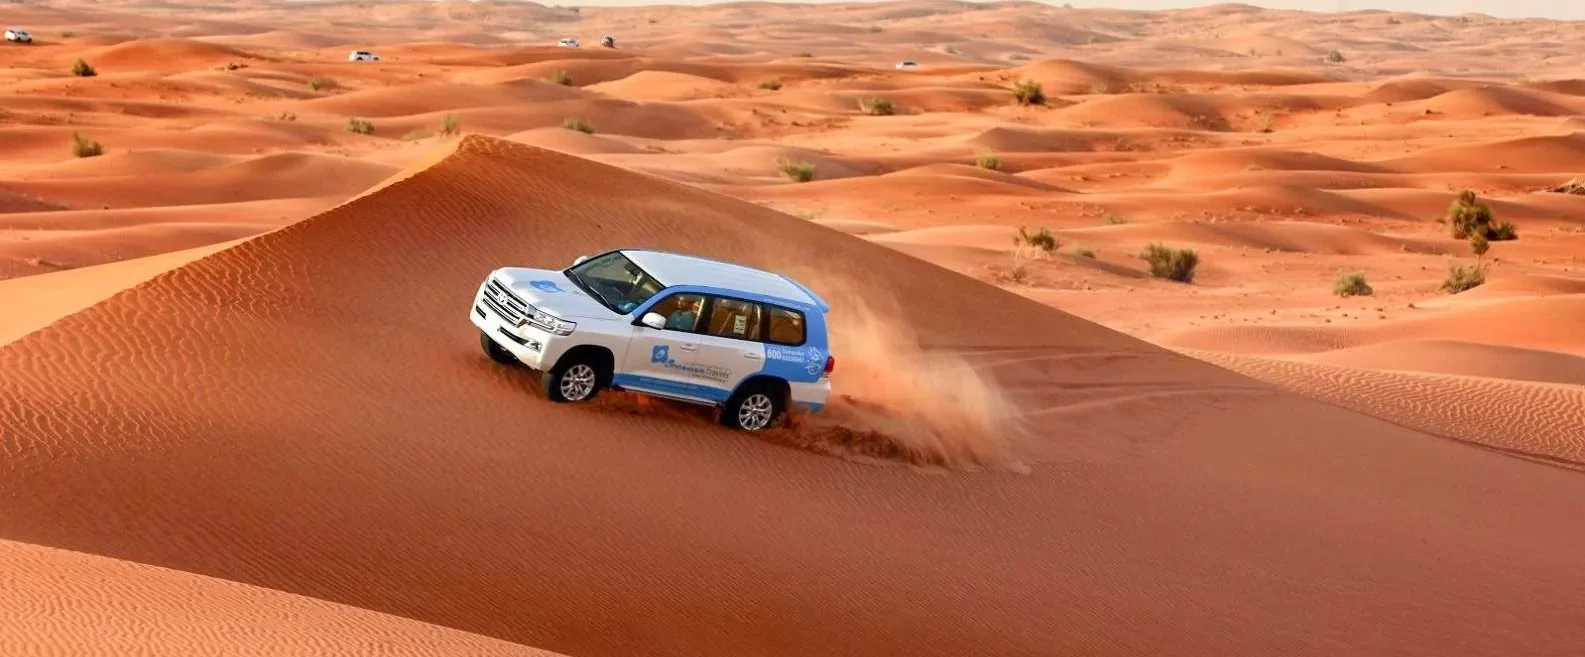 Дубайское сафари - это не только езда на джипах и песчаных дюнах, но и увлекательные шоу и угощения.